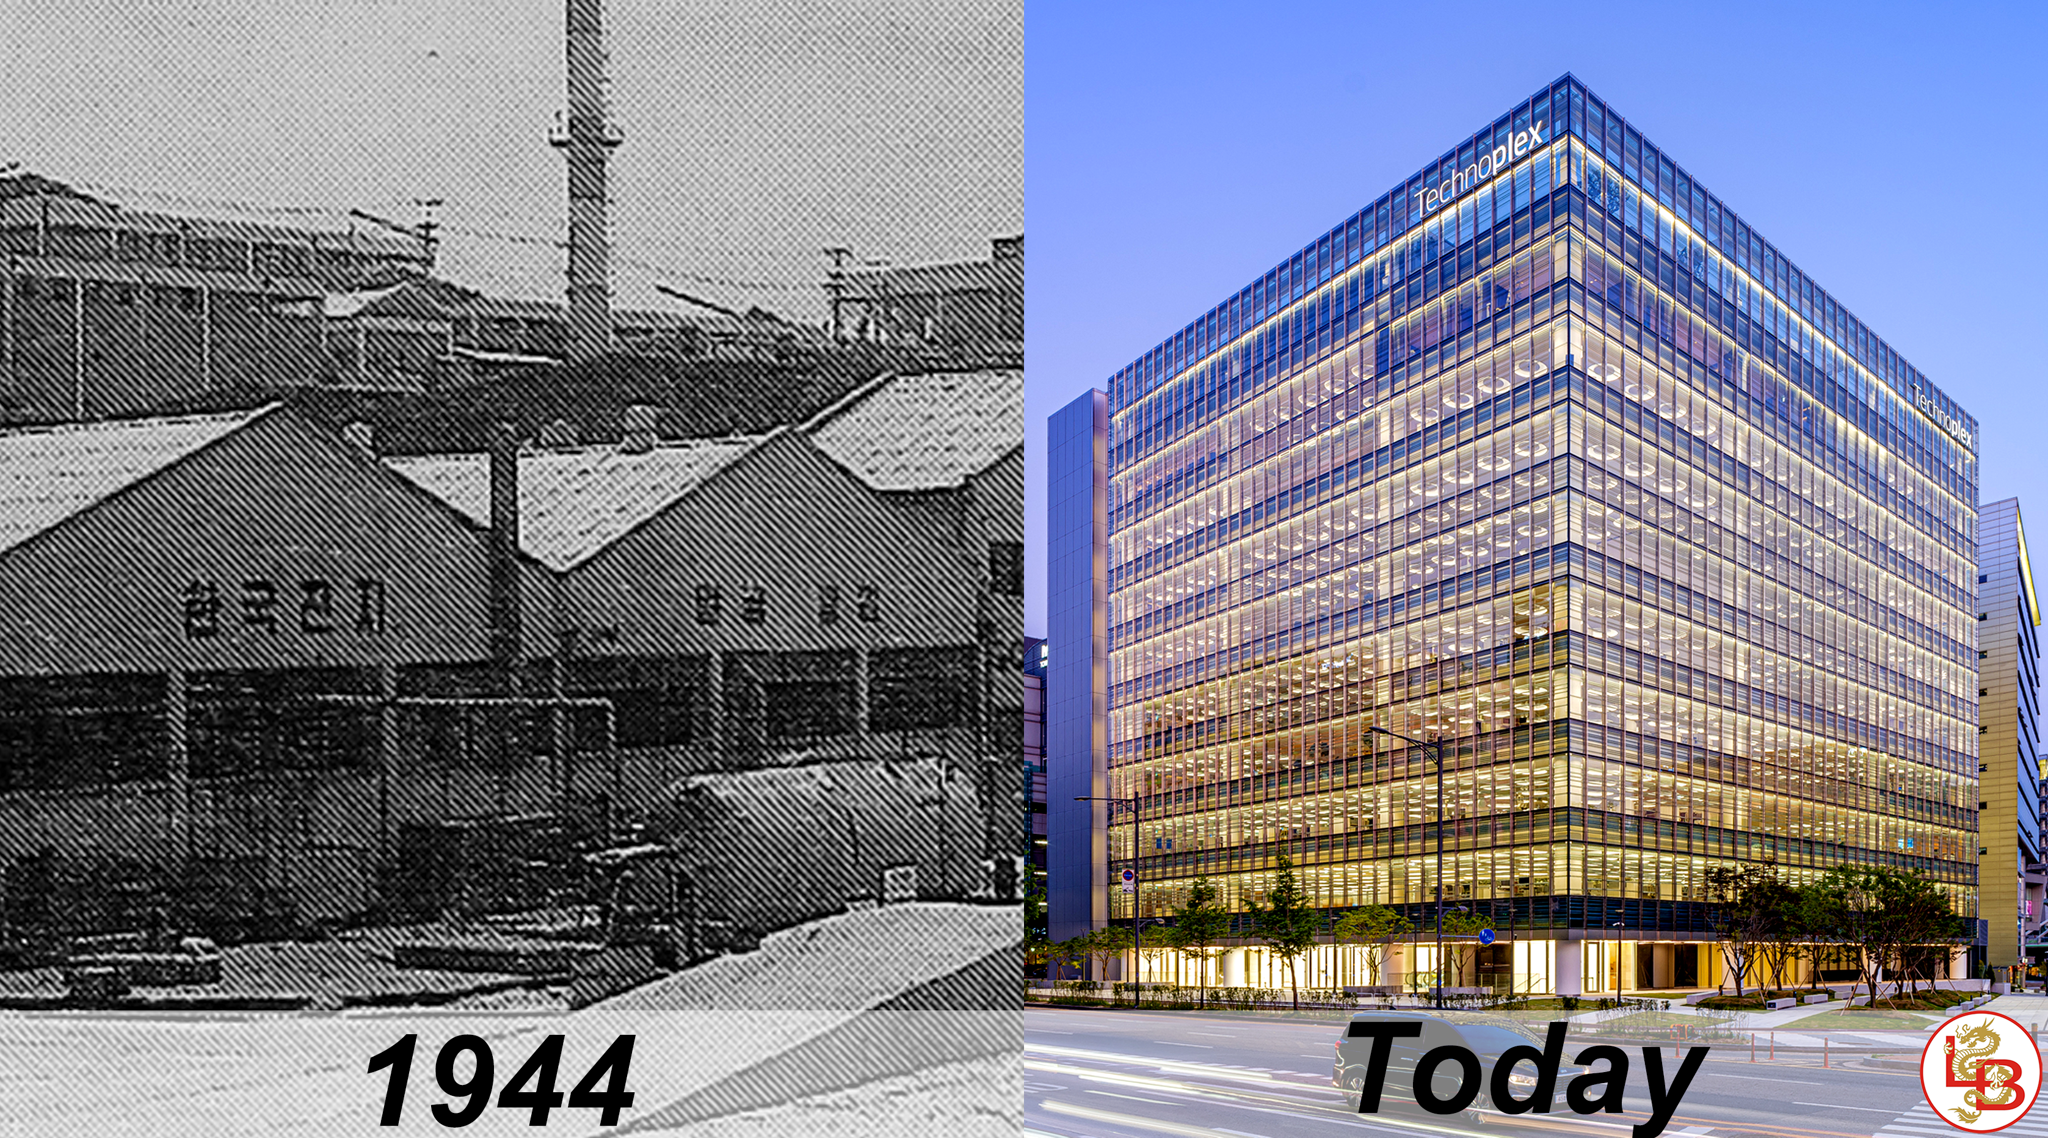 nhà máy và văn phòng ATLASBX Co,. Ltd từ năm 1944 đến hiện tại